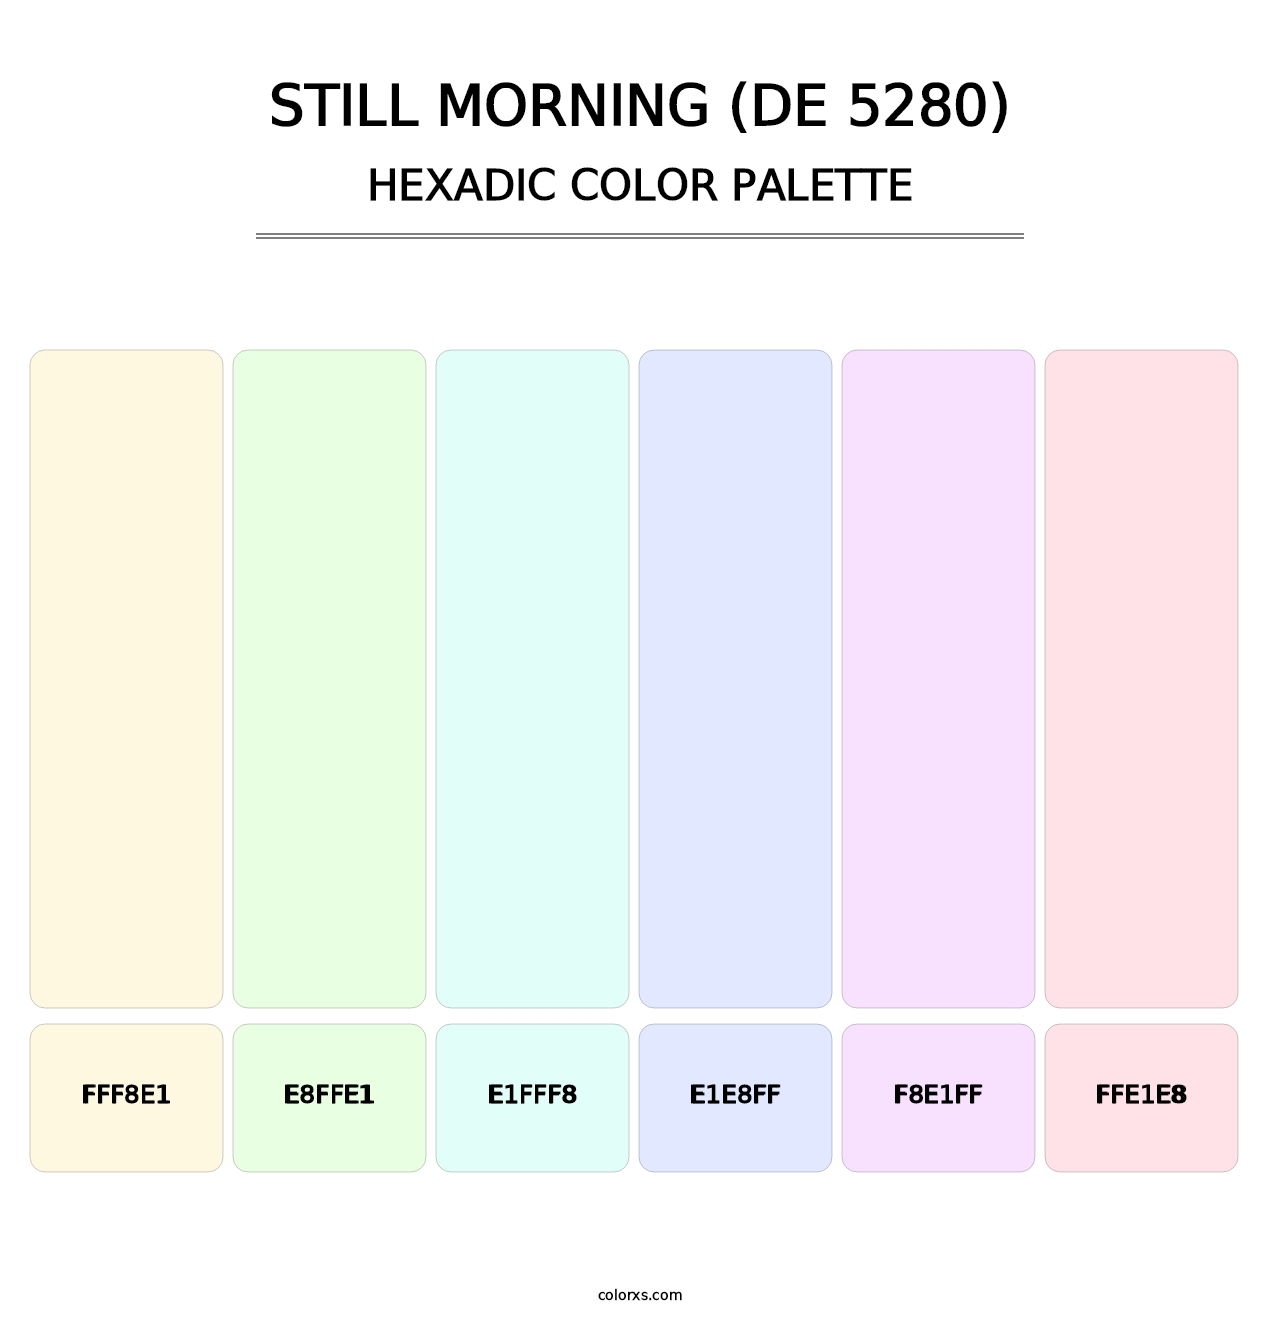 Still Morning (DE 5280) - Hexadic Color Palette